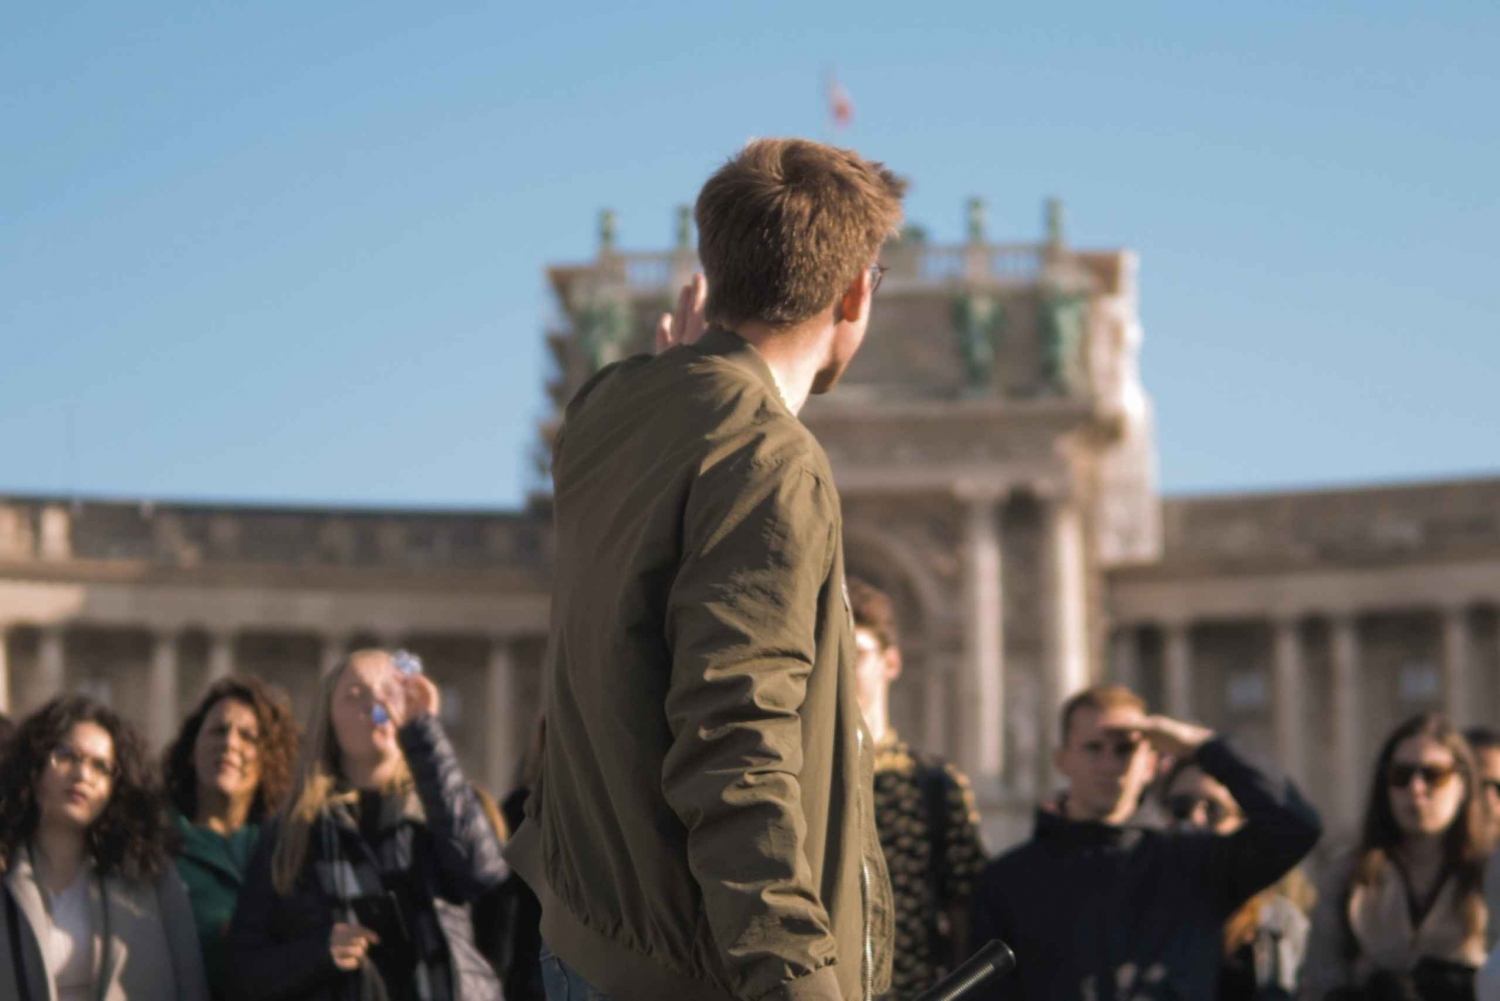 Wenen: Privéwandeling naar de Hofburg & Grabenstraat